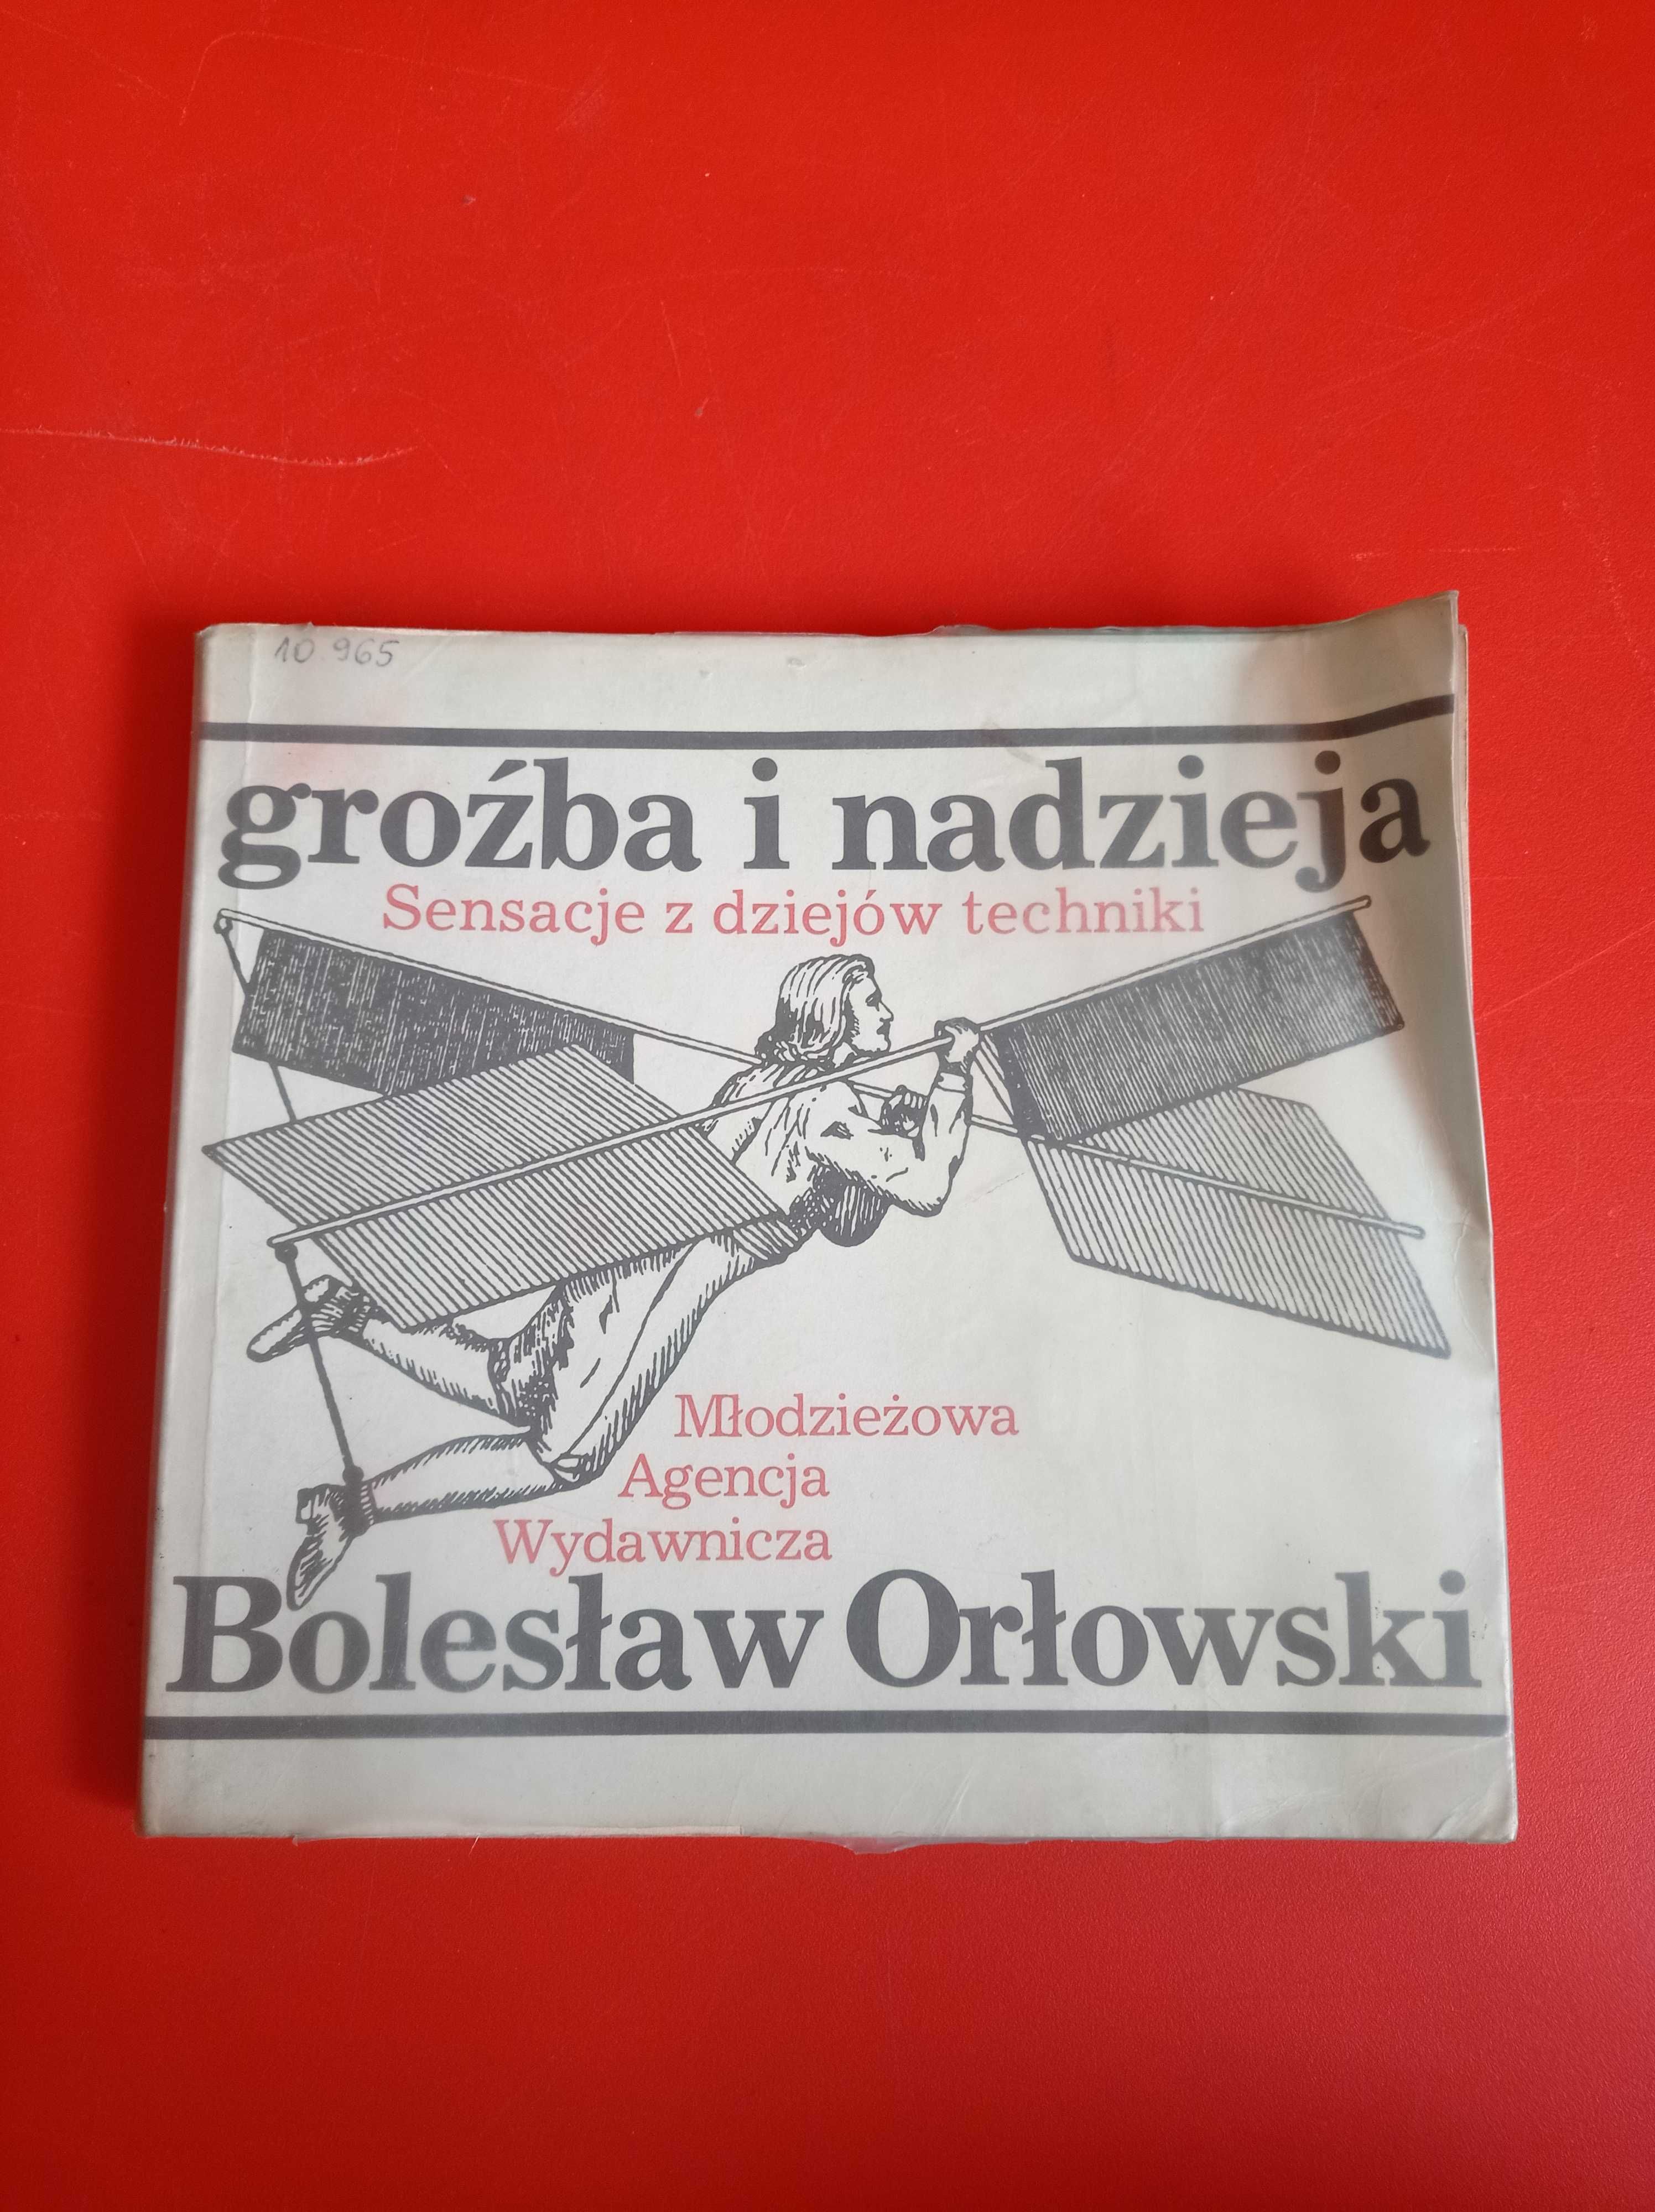 Groźba i nadzieja. Sensacje z dziejów techniki, Bolesław Orłowski